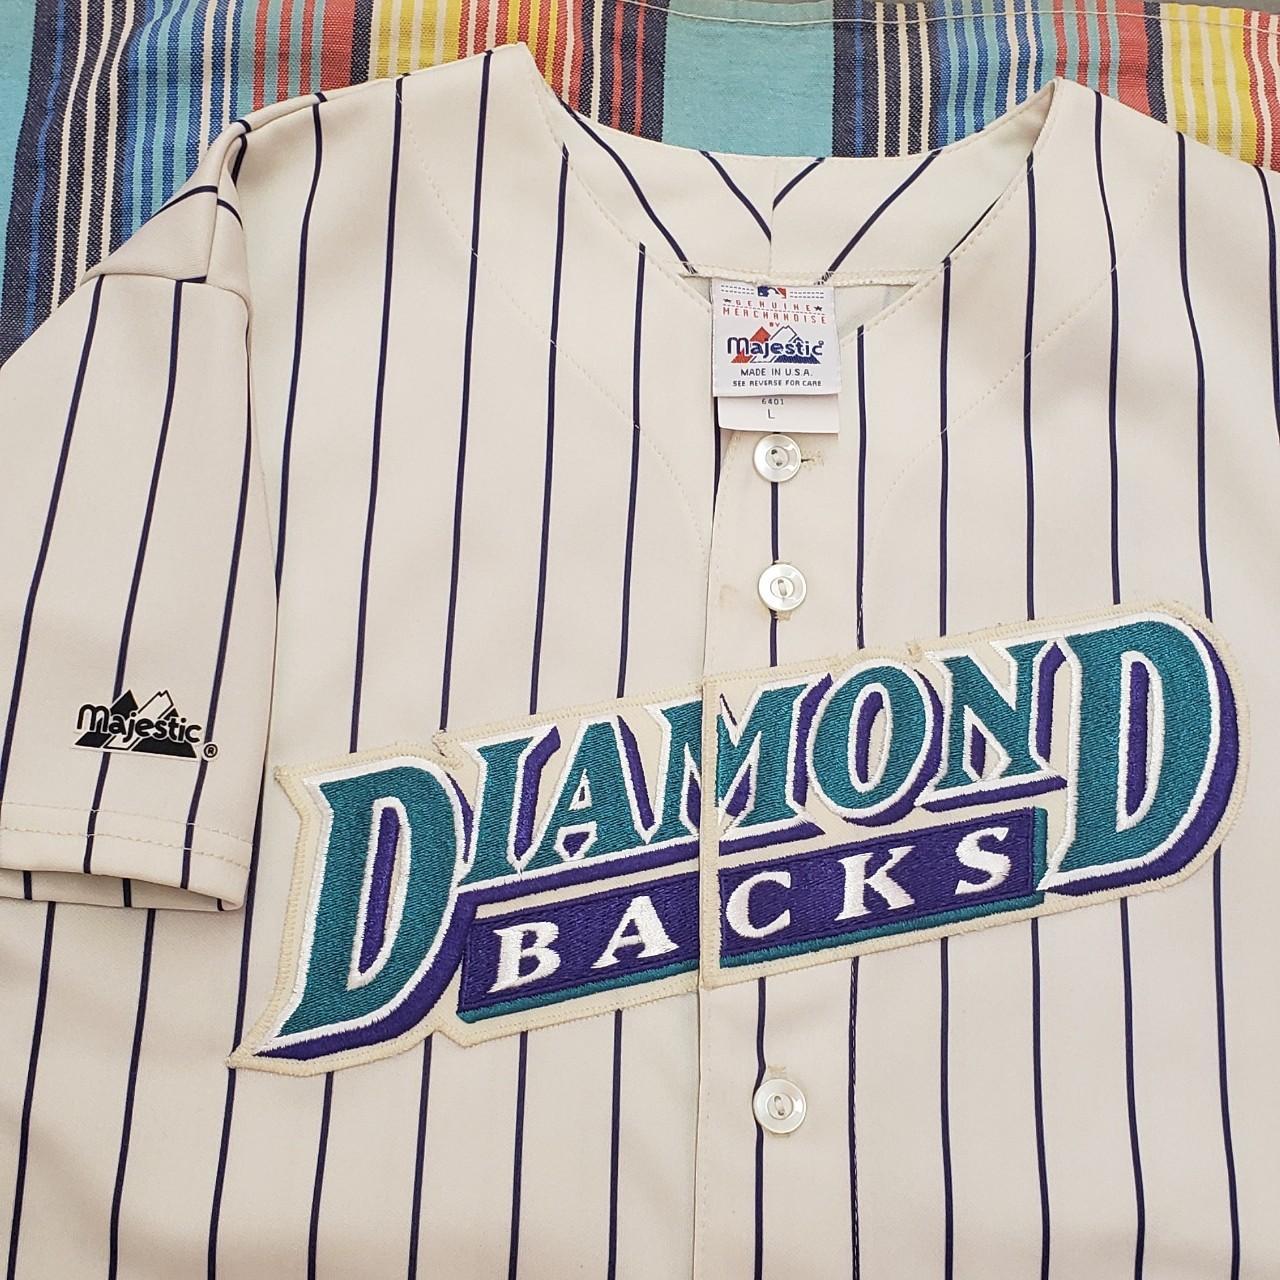 vintage arizona diamondbacks jersey